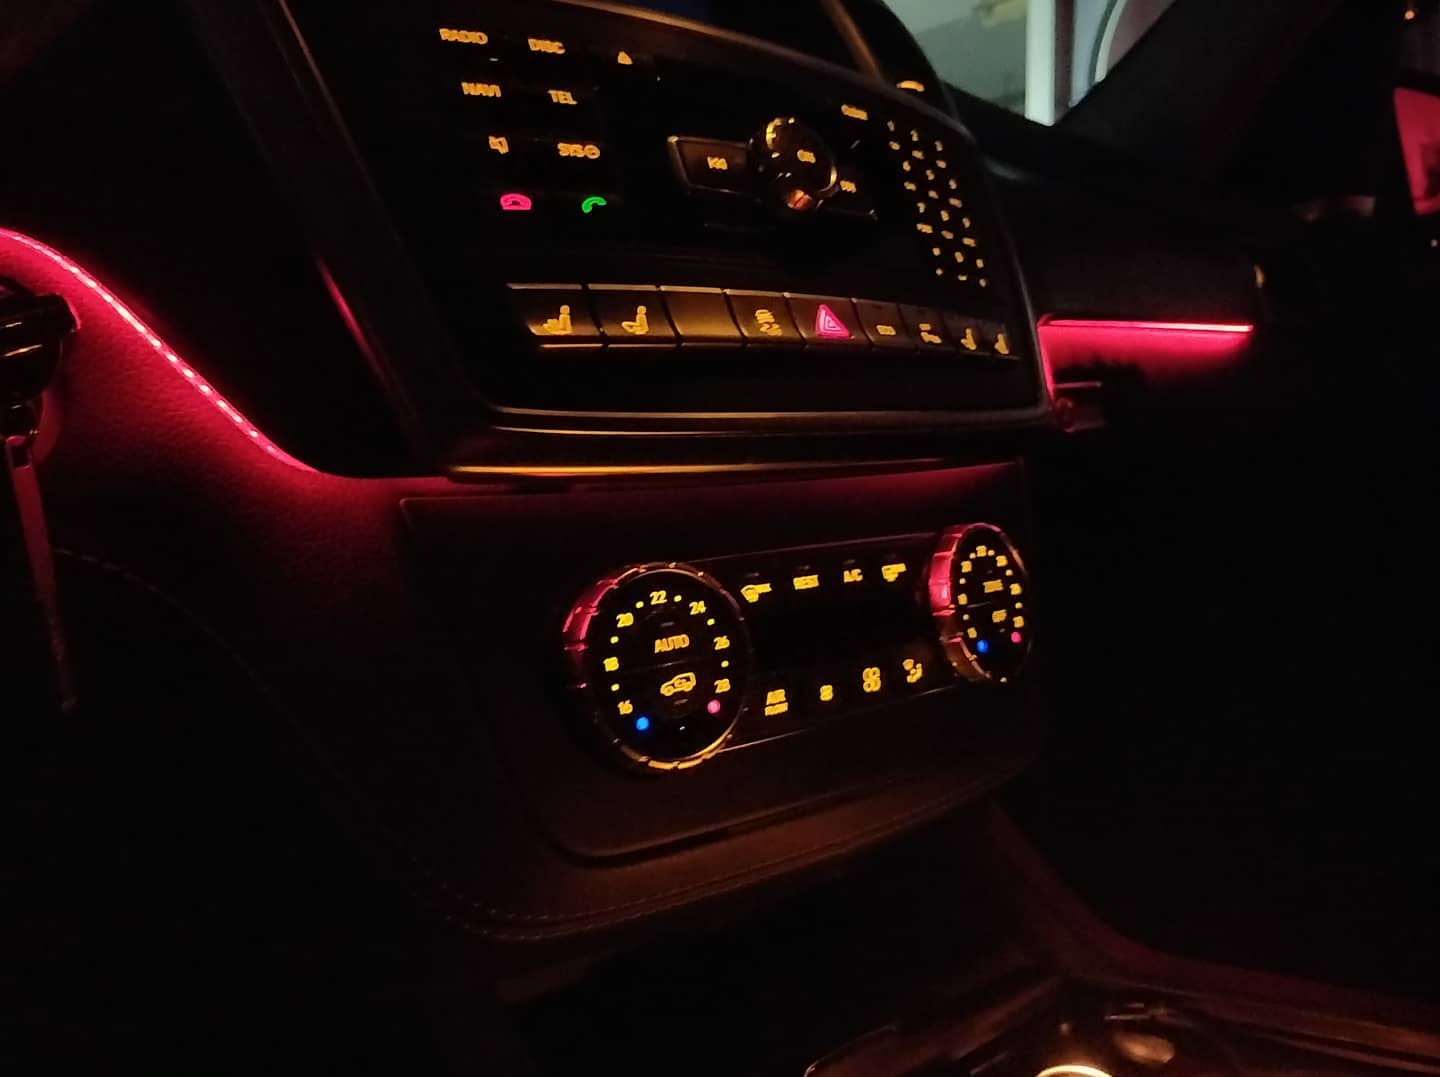 Купить подсветку мерседес. Штатная подсветка Mercedes-Benz gl. Подсветка салона Мерседес GLE. GLS 2016 подсветка салона. Подсветка салона Мазда GLE.